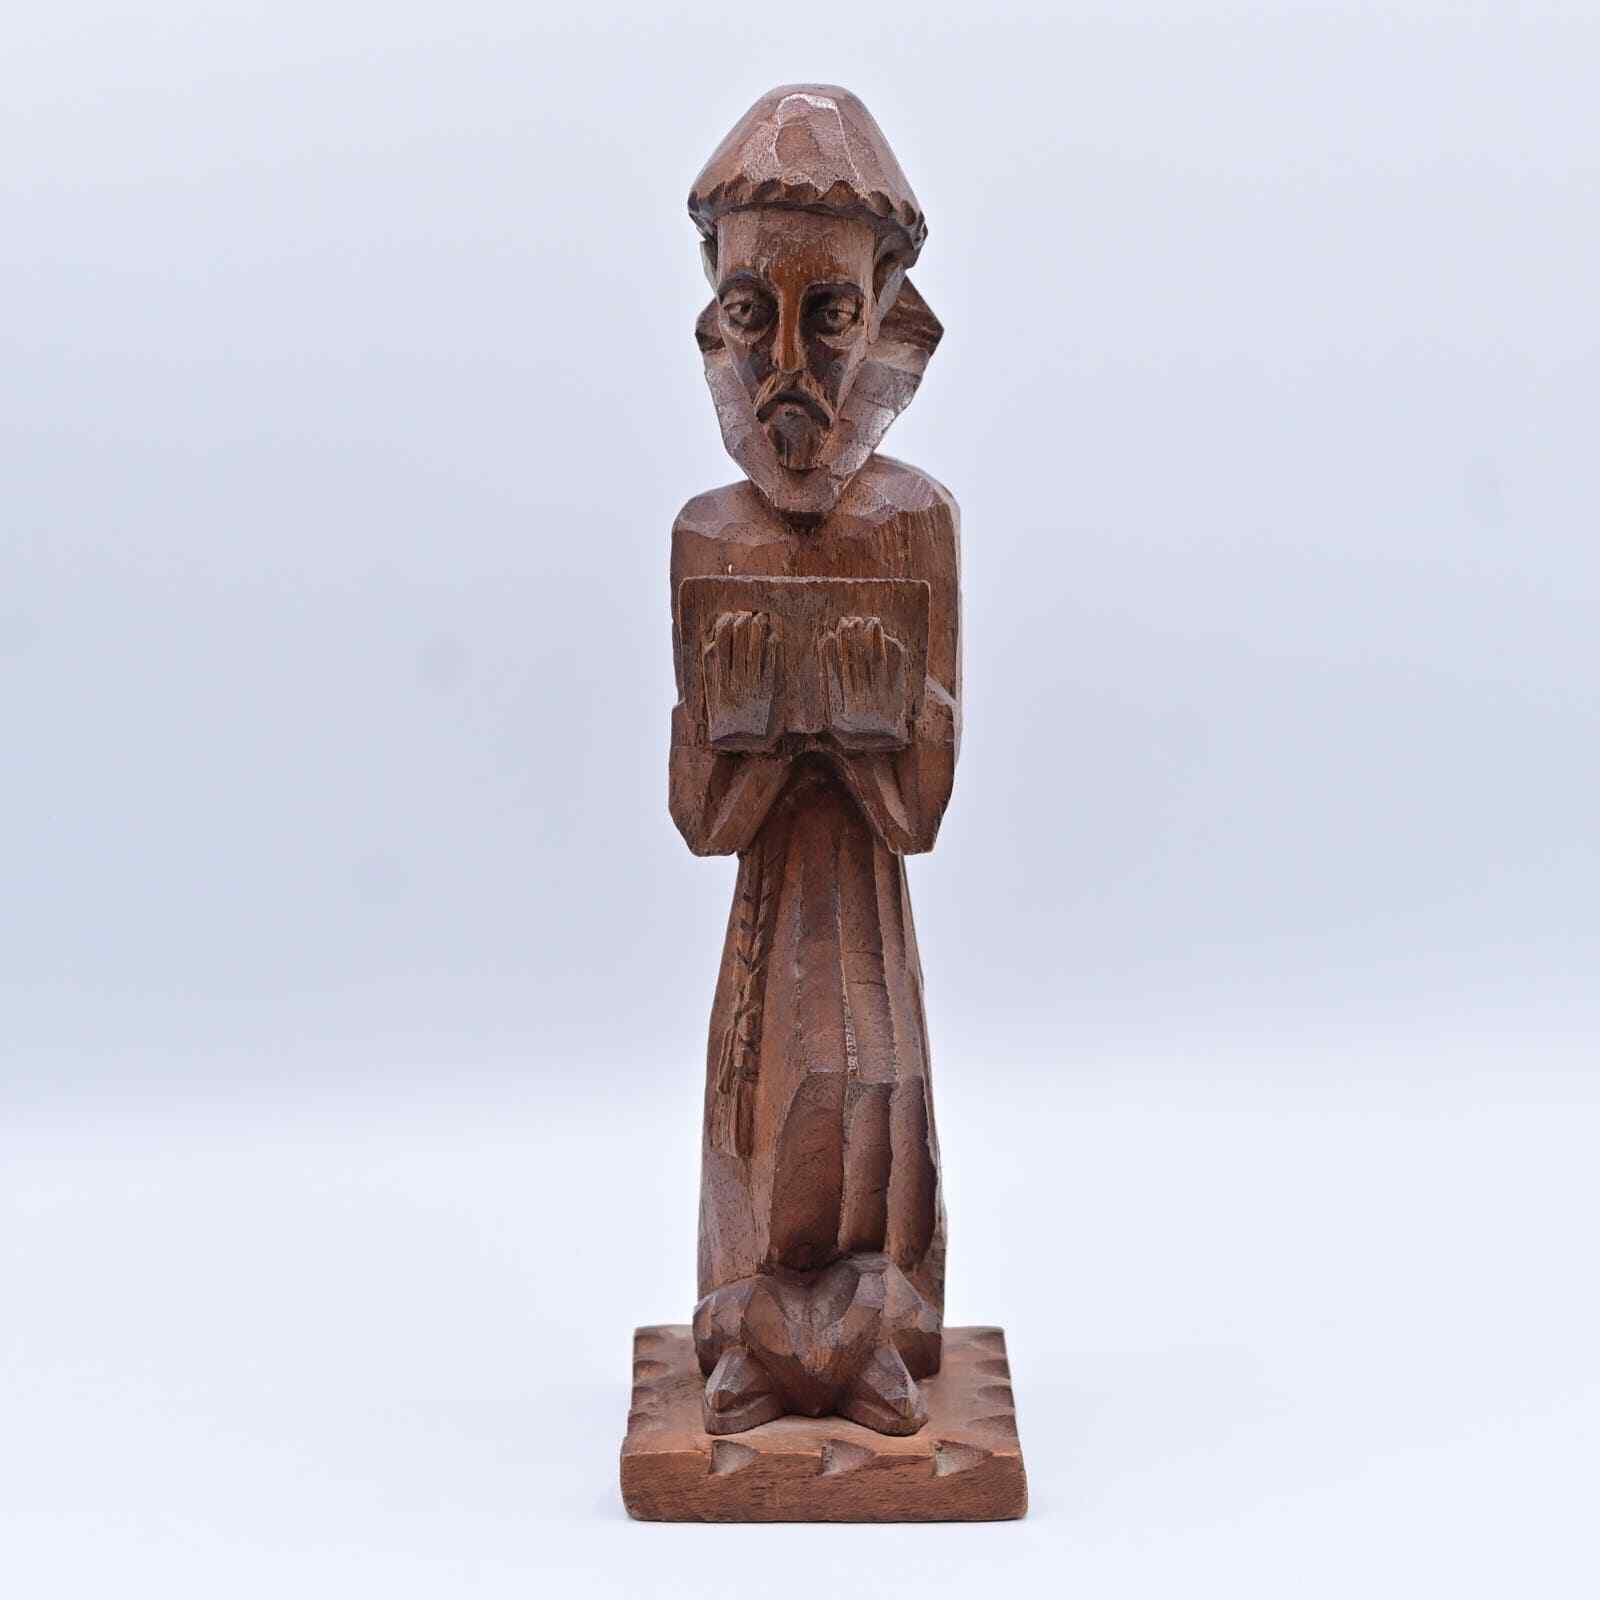 Vintage Hand Carved Wooden Monk Sculpture Figure